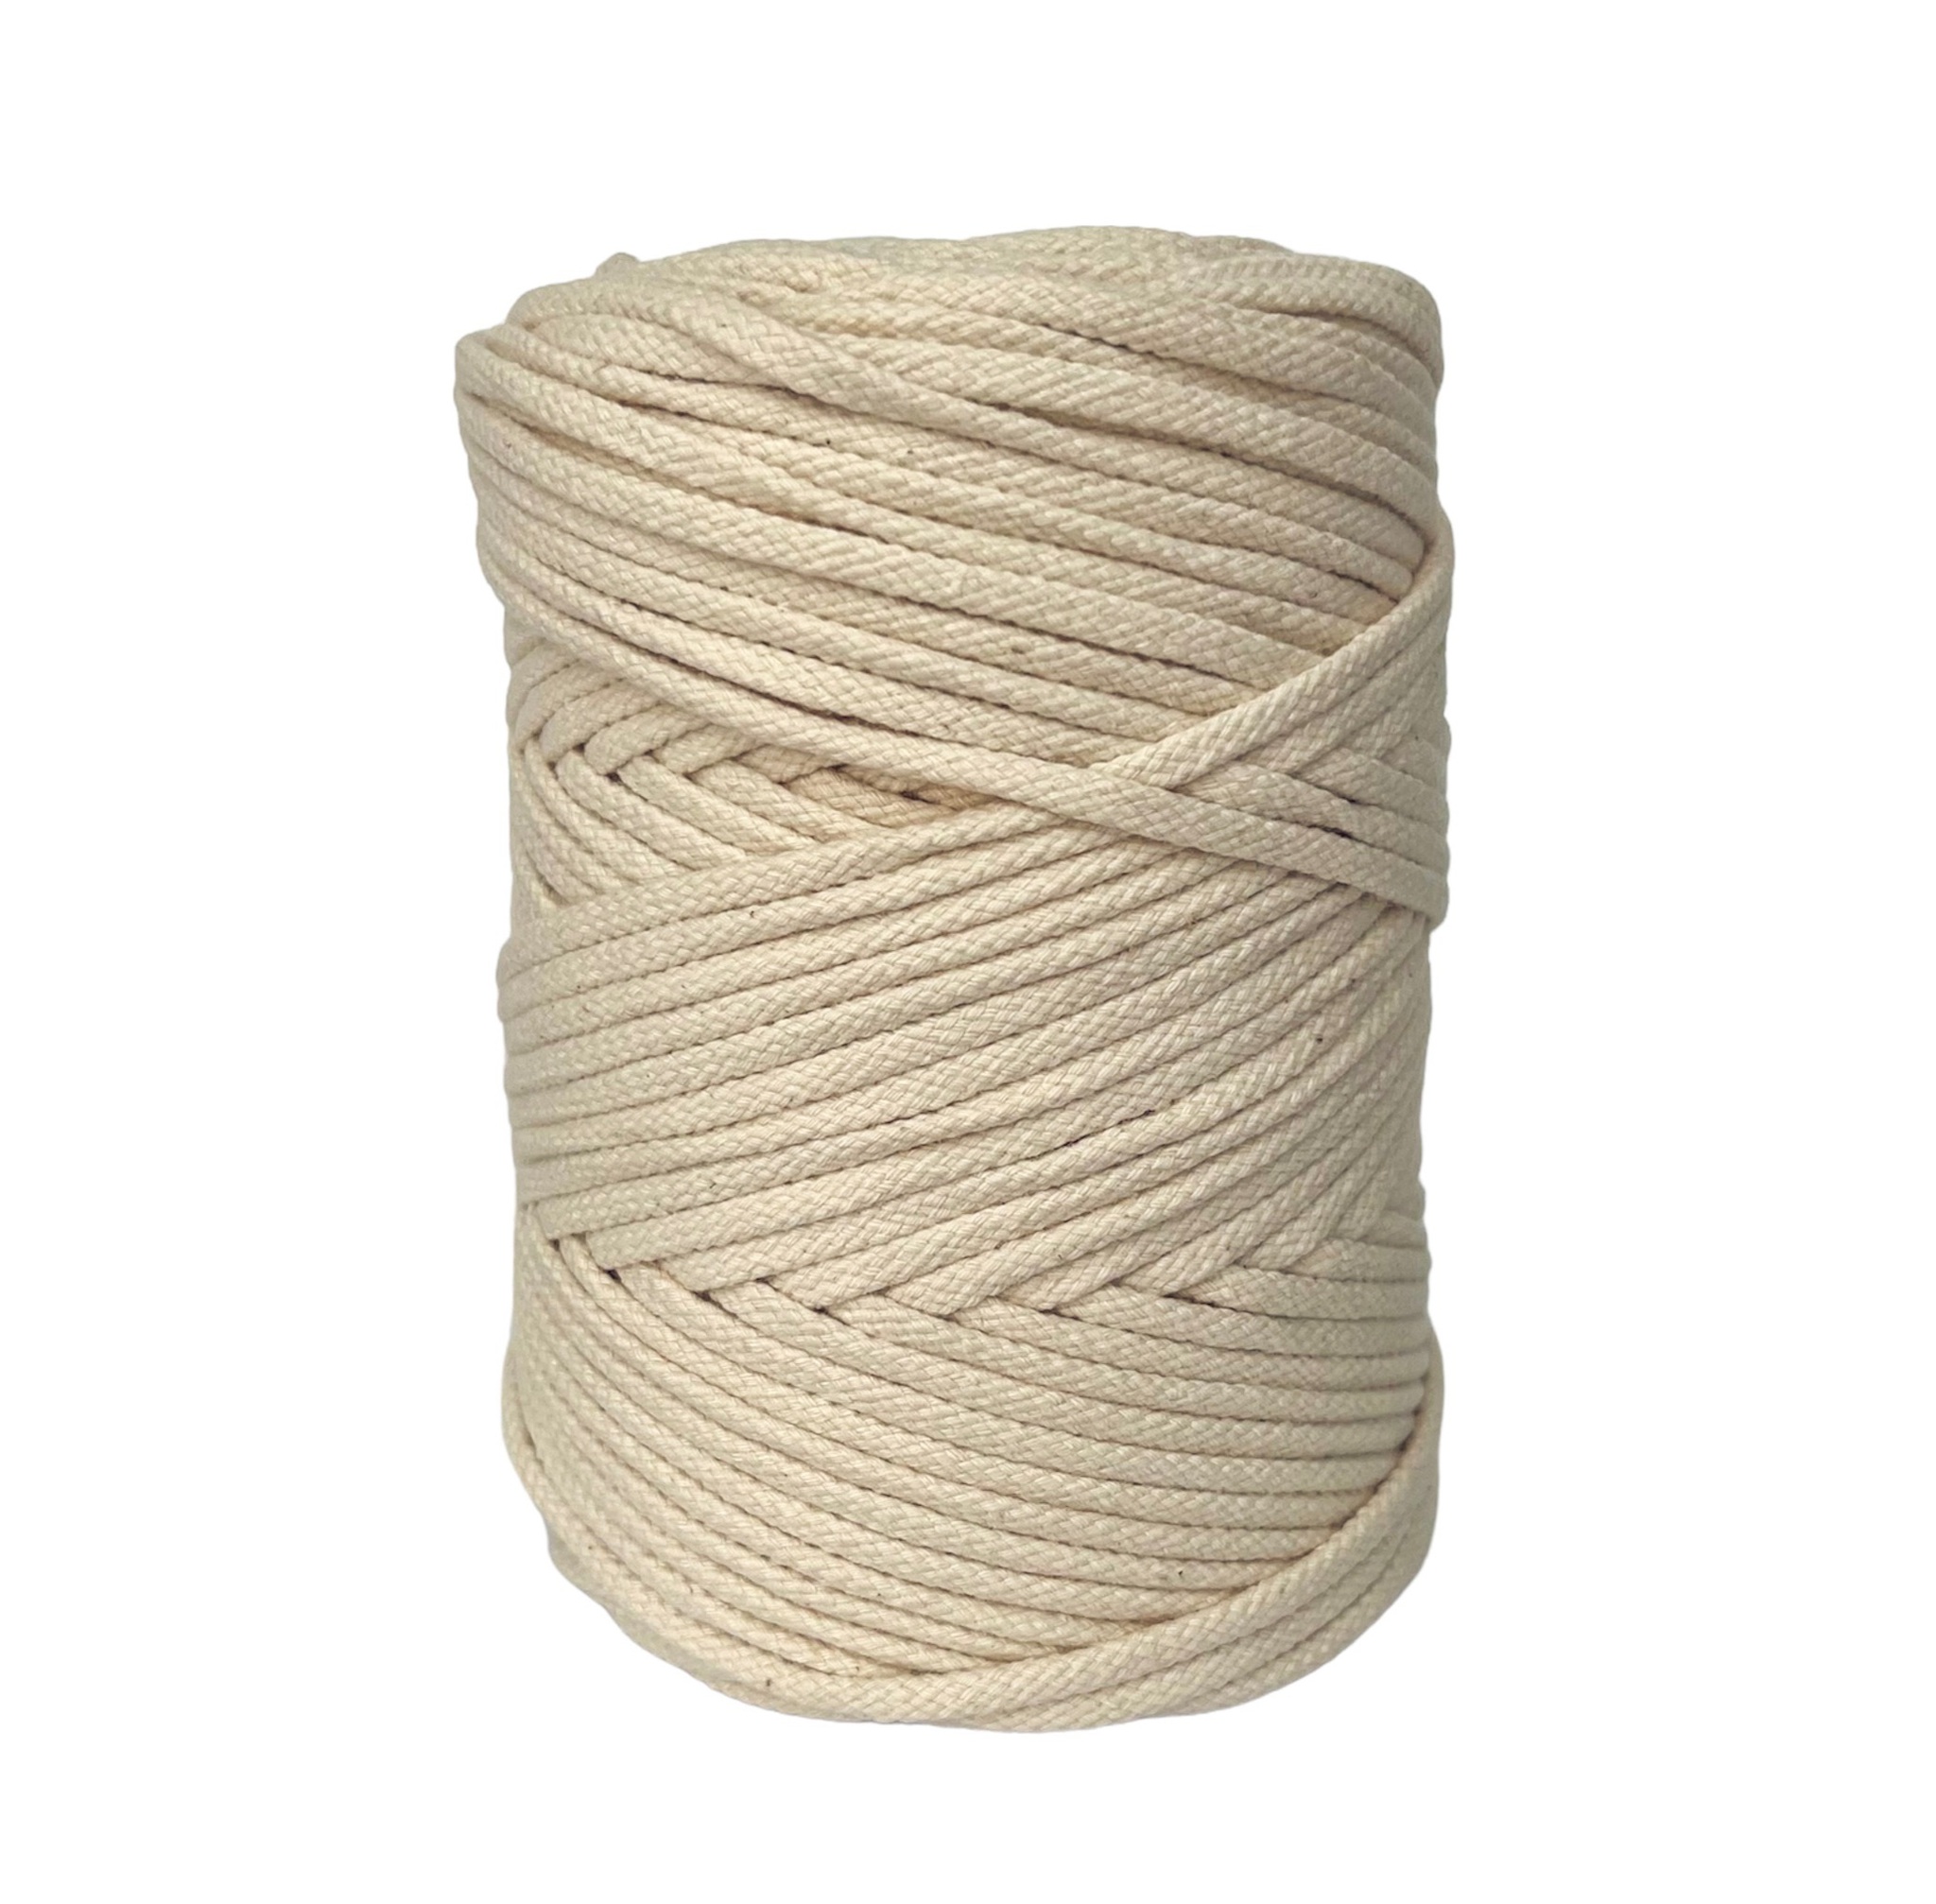 Хлопок плетение. Шнур плетеный хлопчатобумажный 3 мм. Плетеный хлопковый шнур для шитья сумки. Шнур круглый объемный. Мокасиная круглая объемная нить.